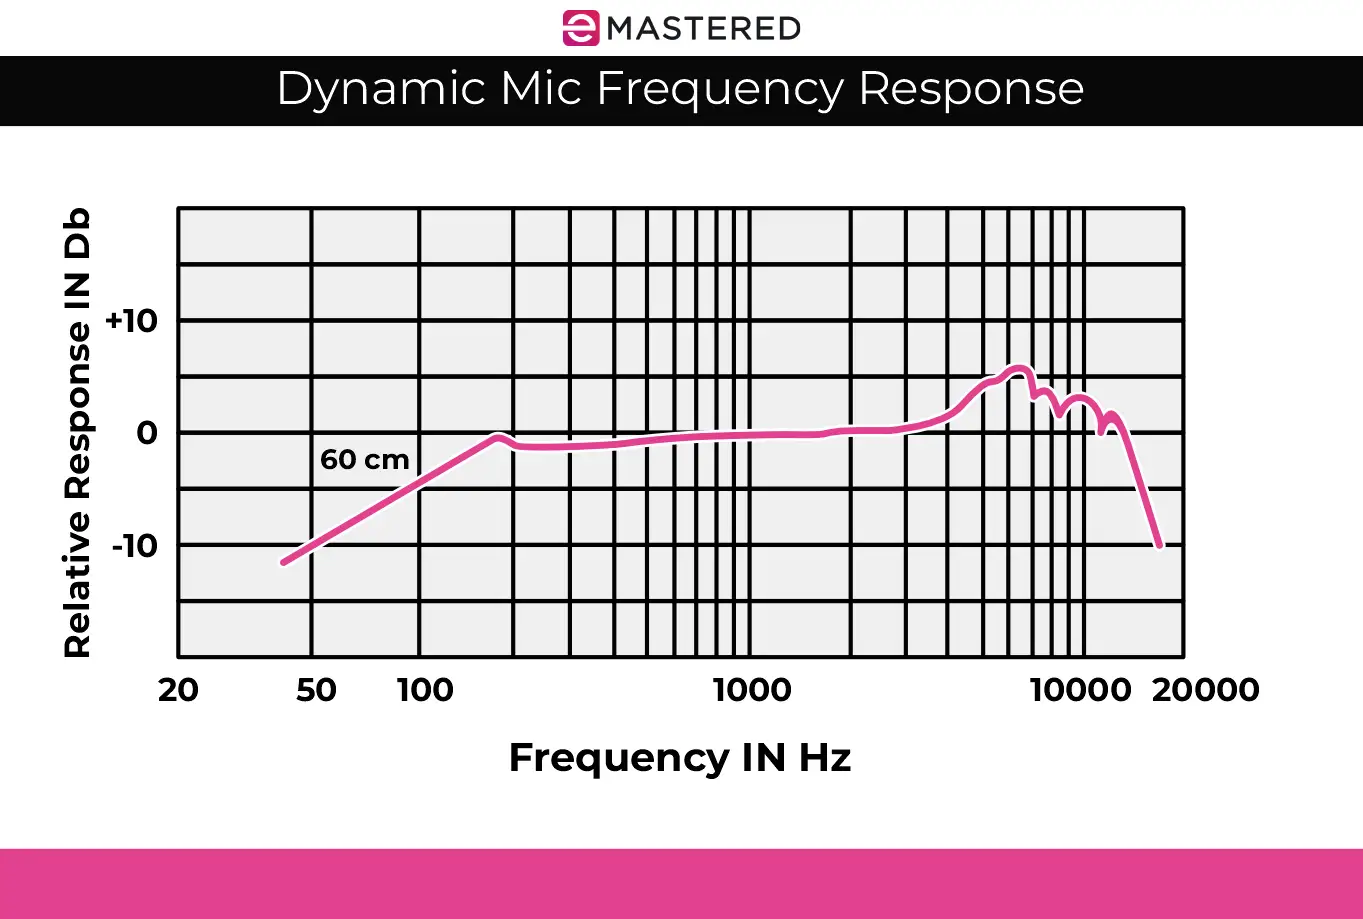 Microphones dynamiques ou à condensateur - Quel est le plus adapté